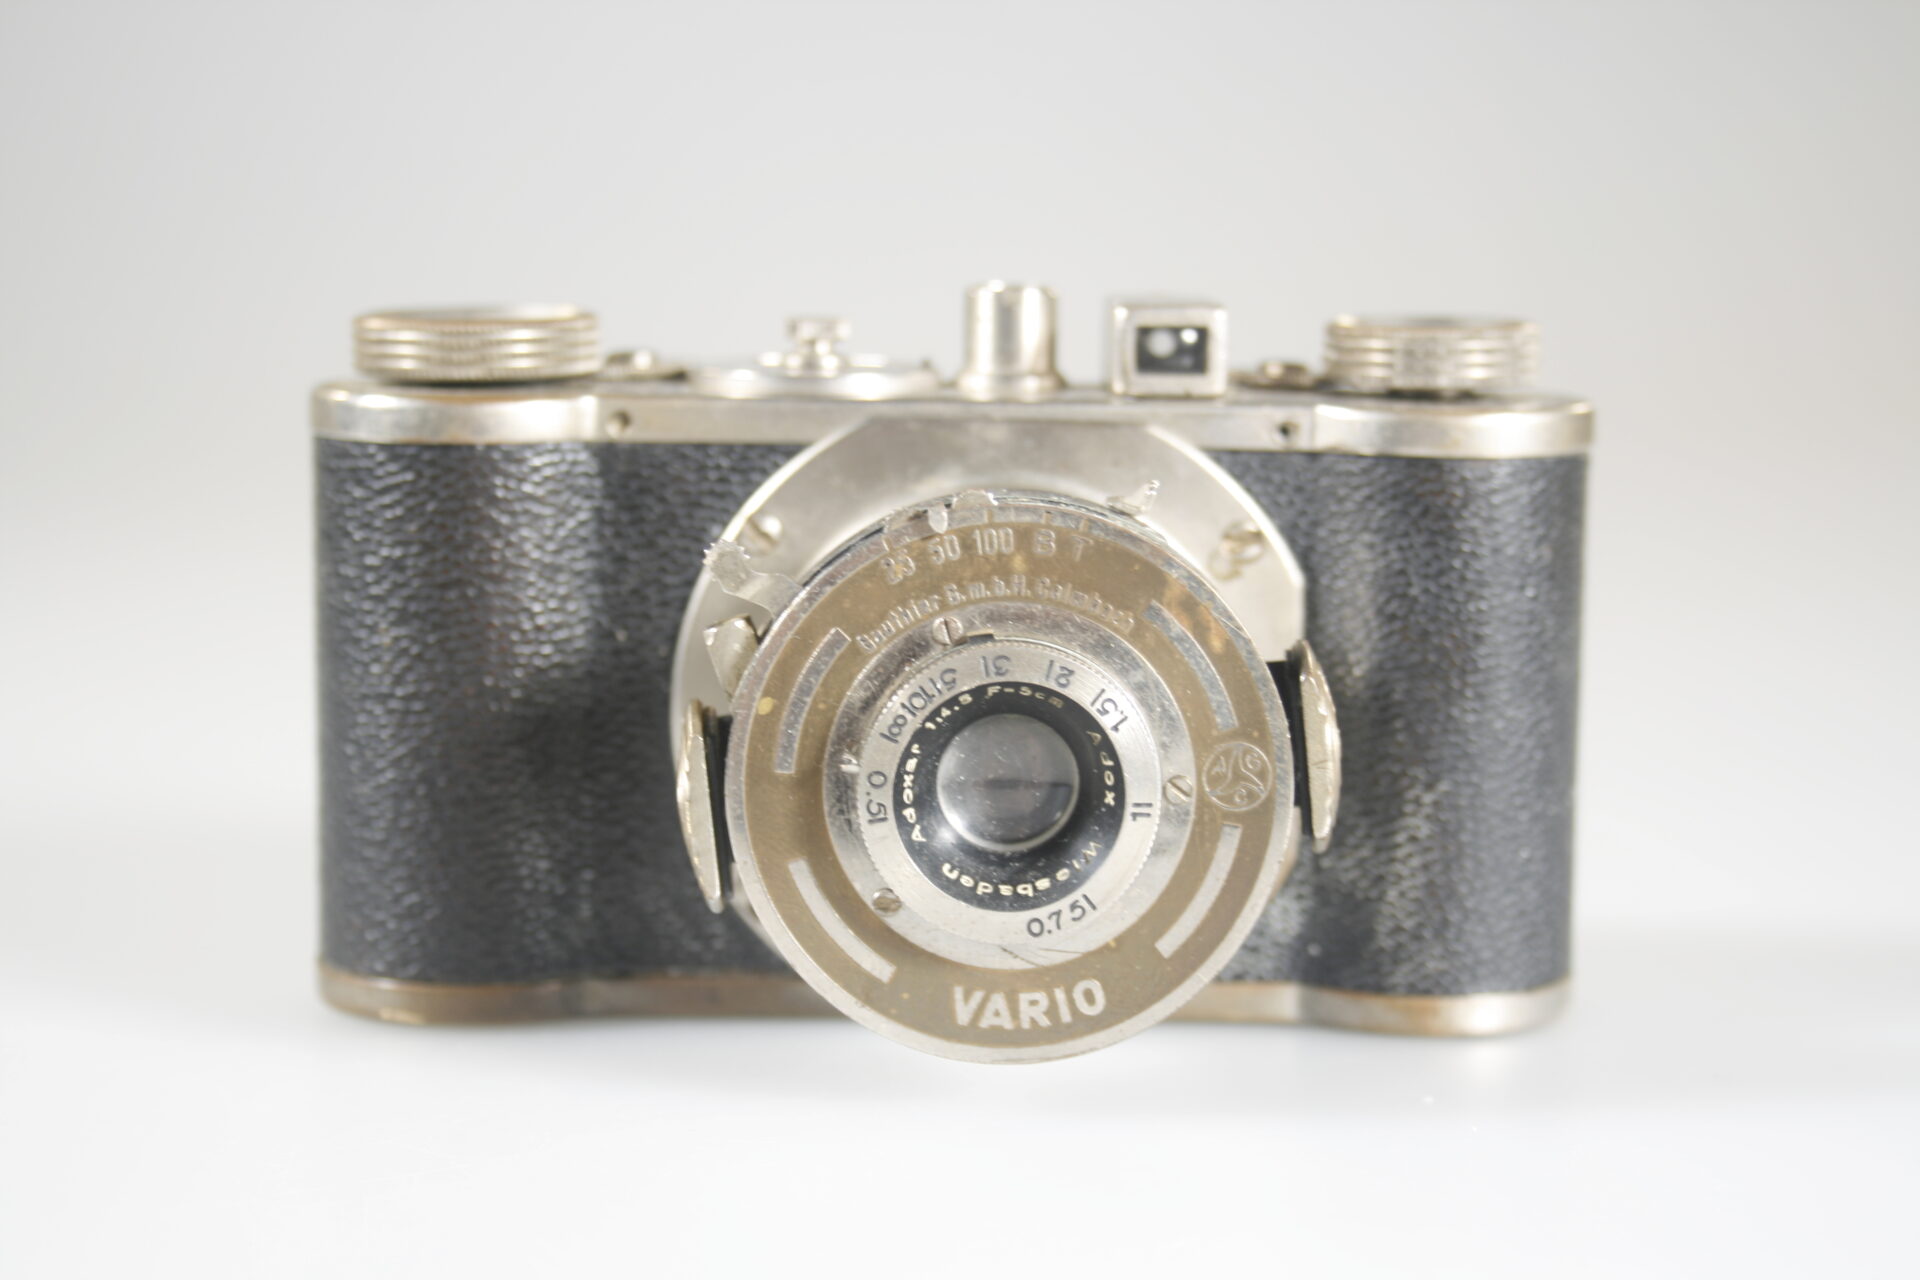 Adox Adrette I. 35mm viewfinder camera. 1939-1940. Duitsland